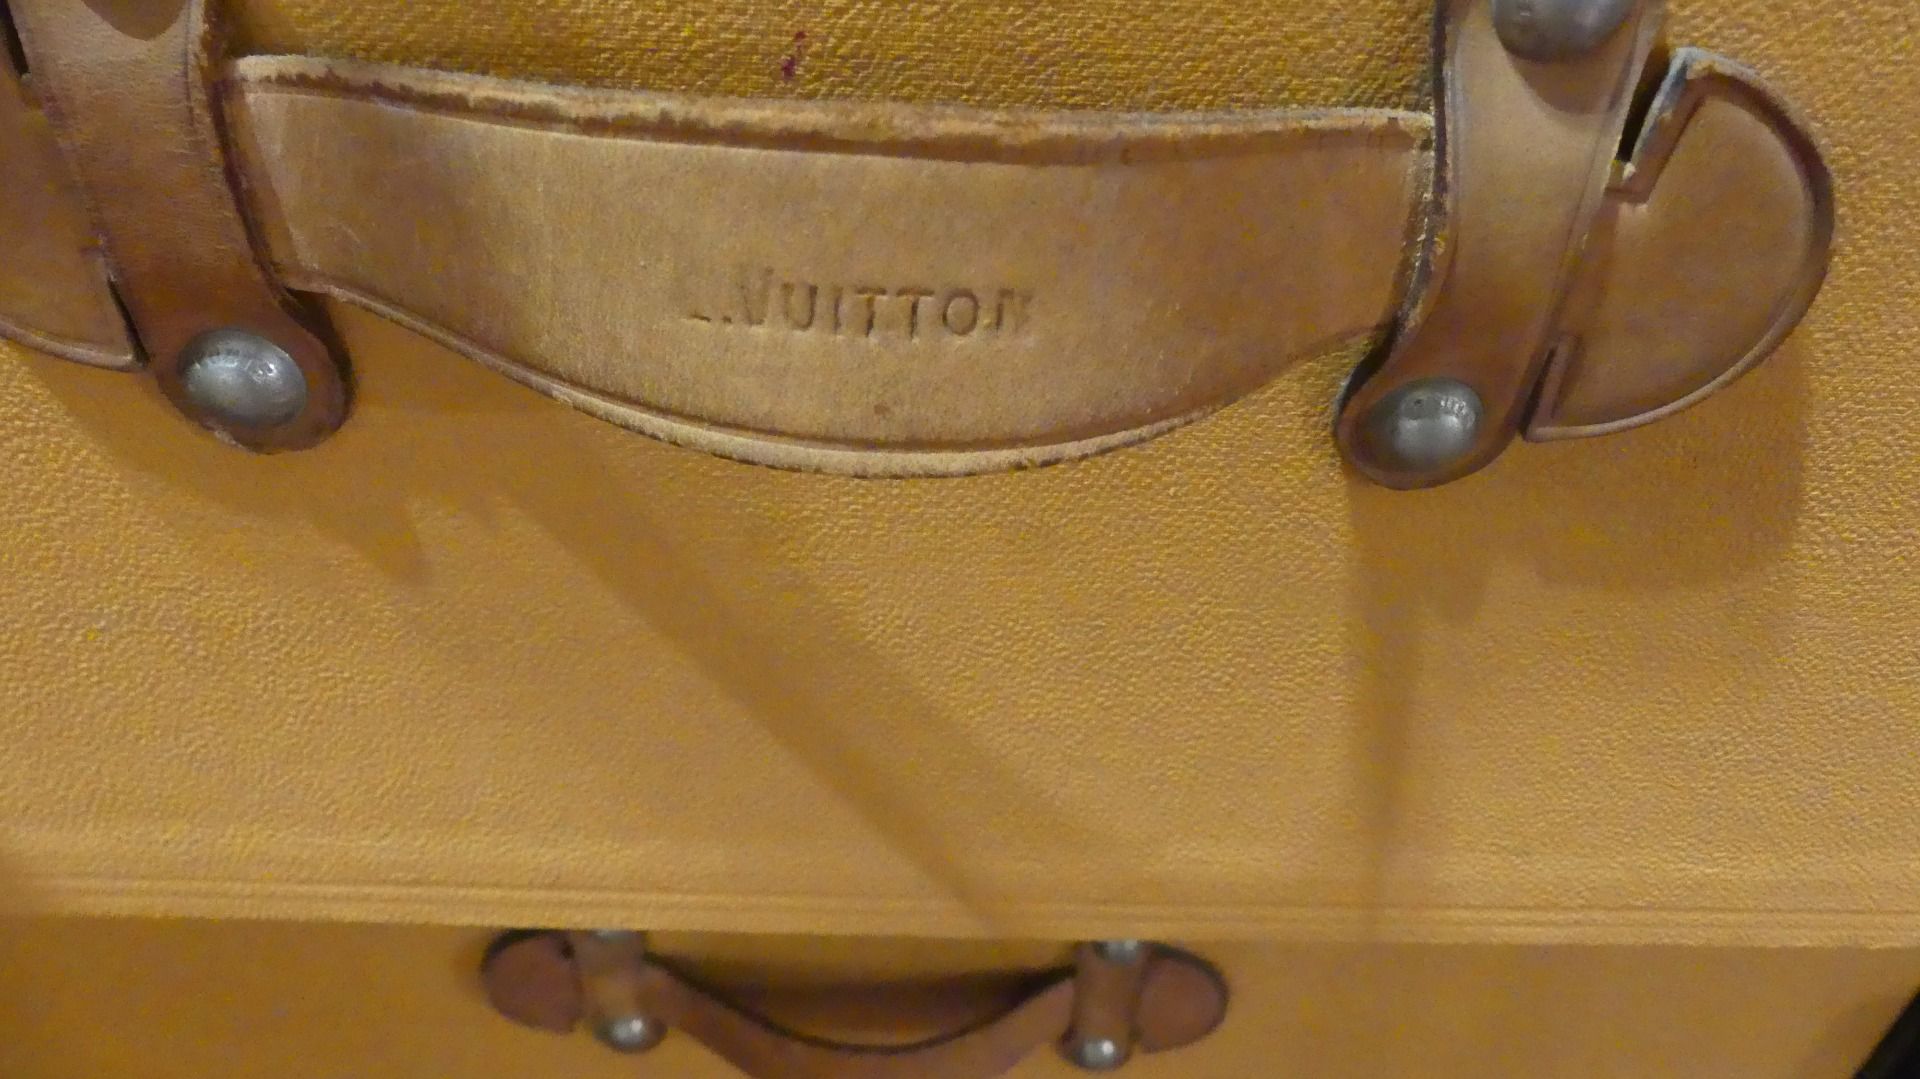 Baule Louis Vuitton – Vivo Vintage